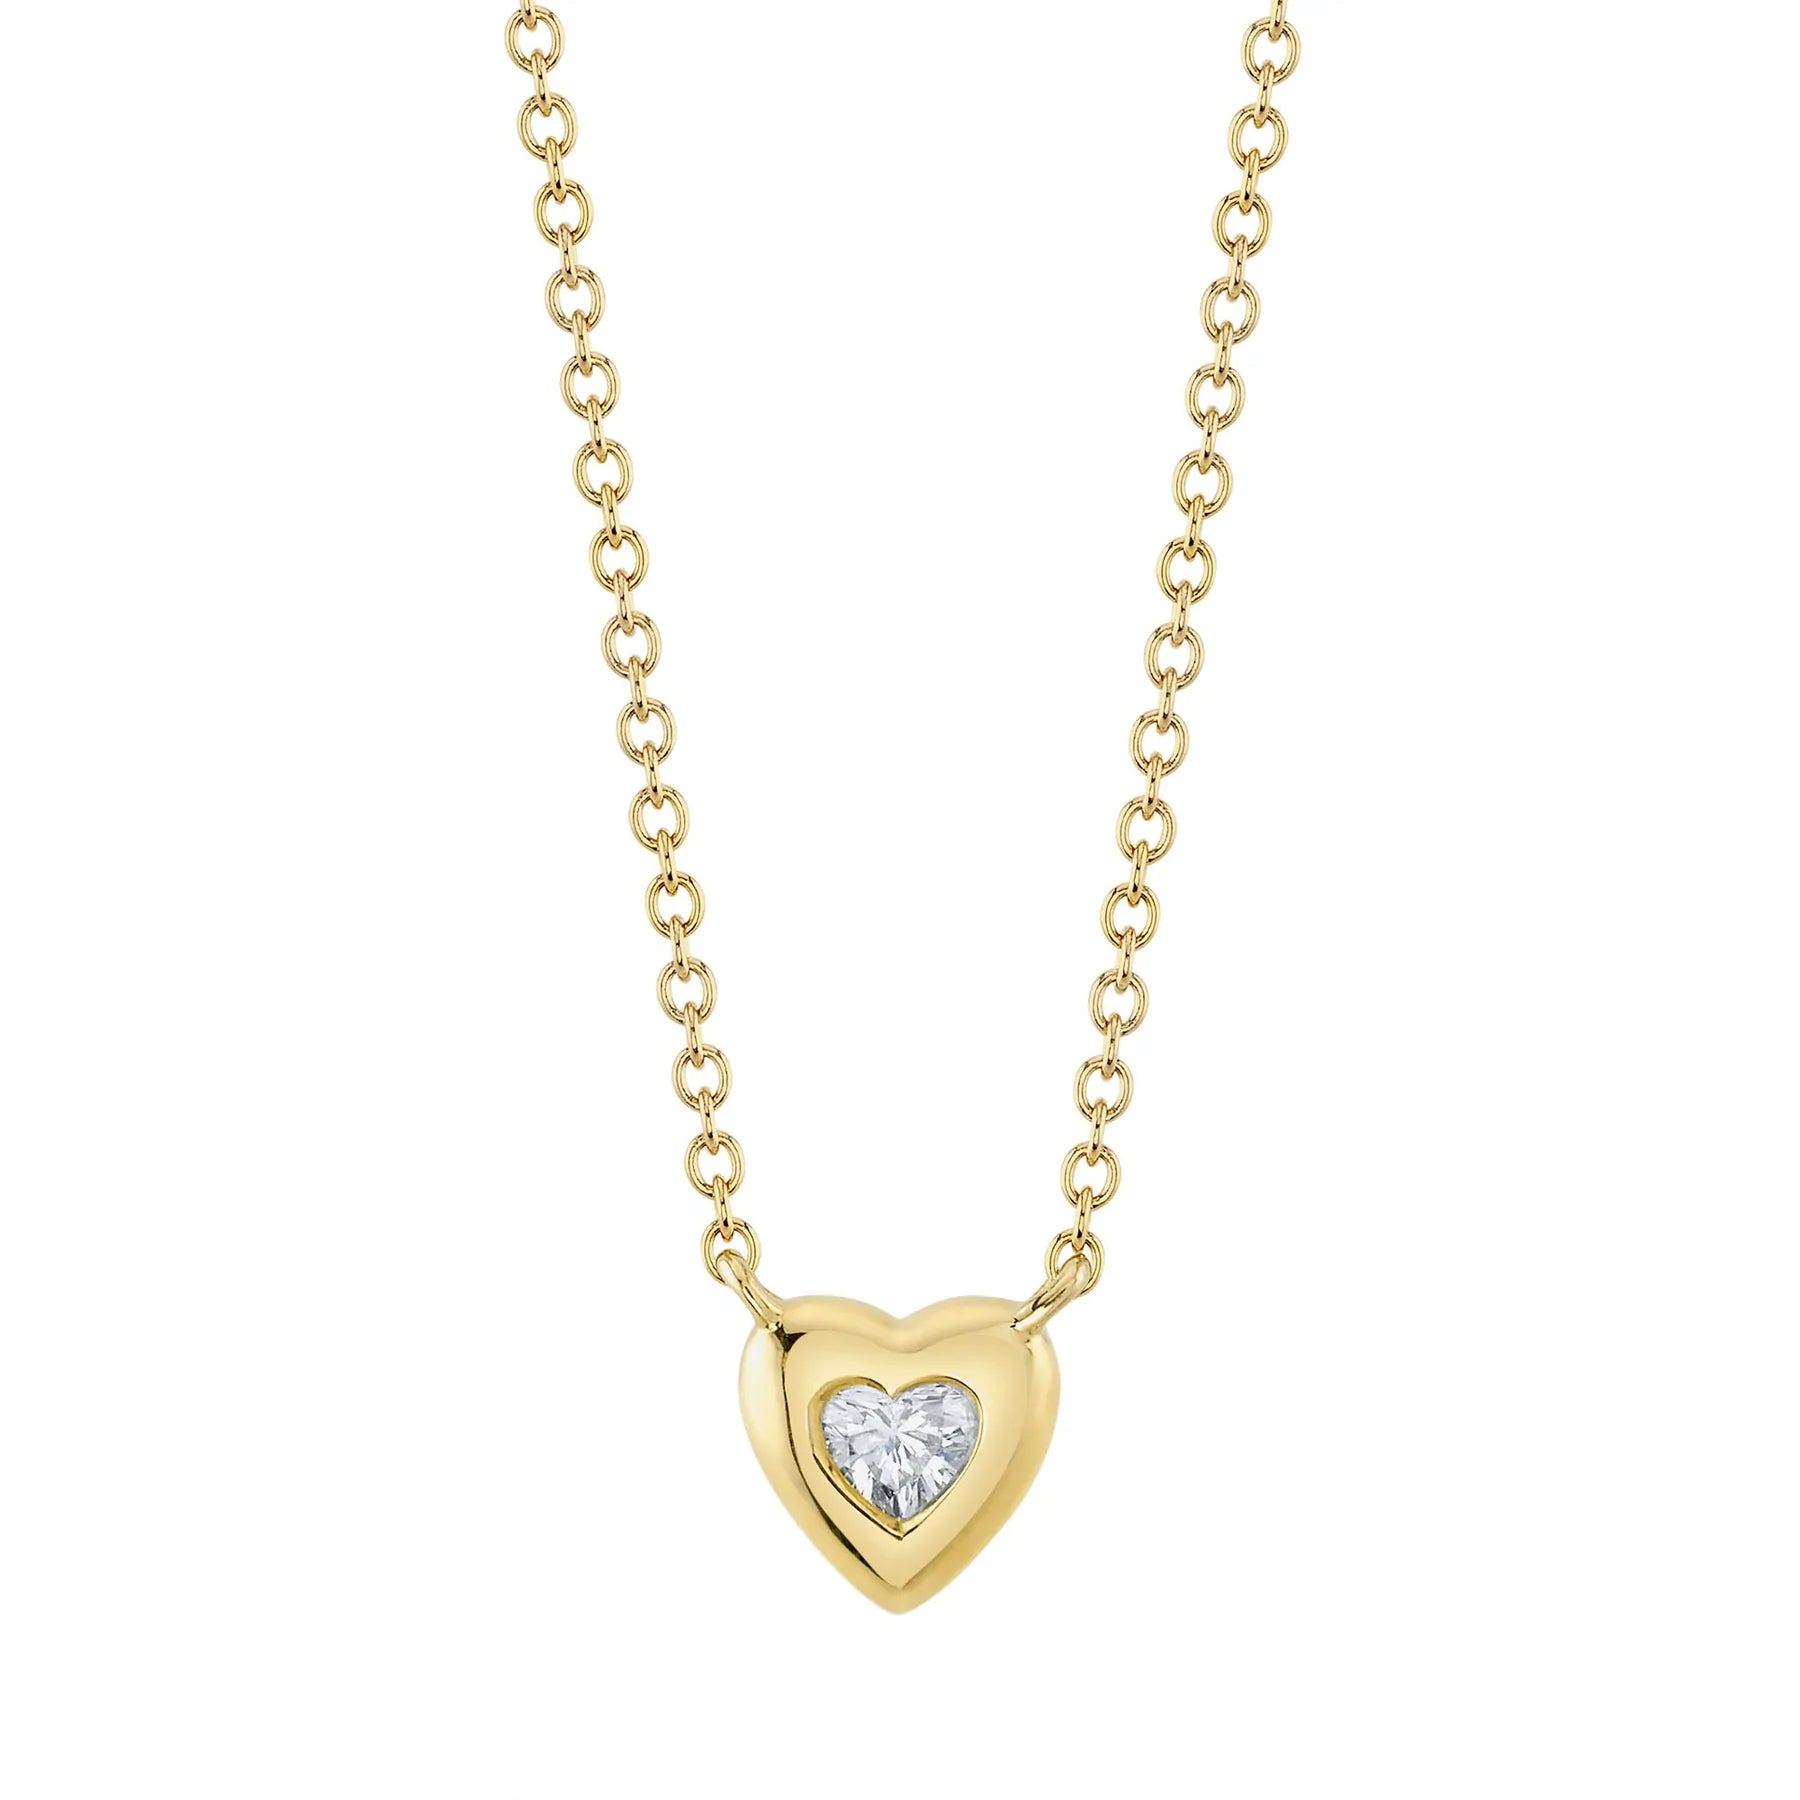 14K Yellow Gold Bezel Set Diamond Heart Necklace